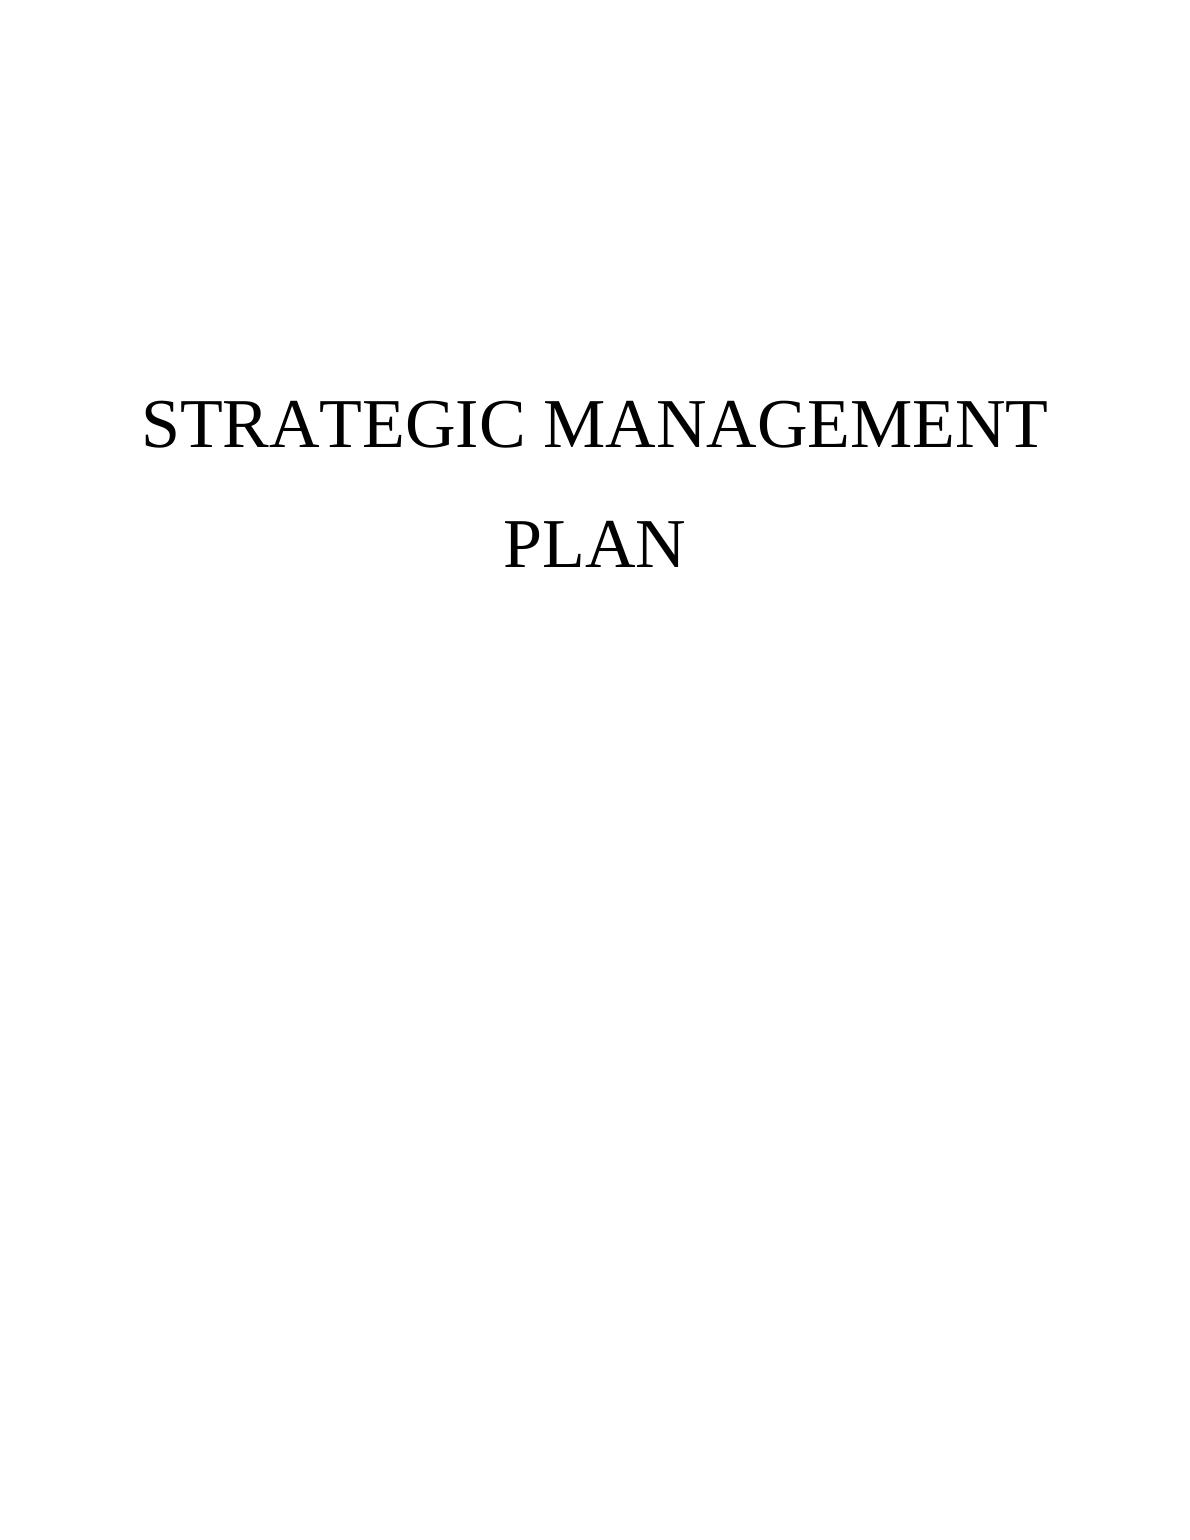 Strategic Management Plan for Starbucks_1